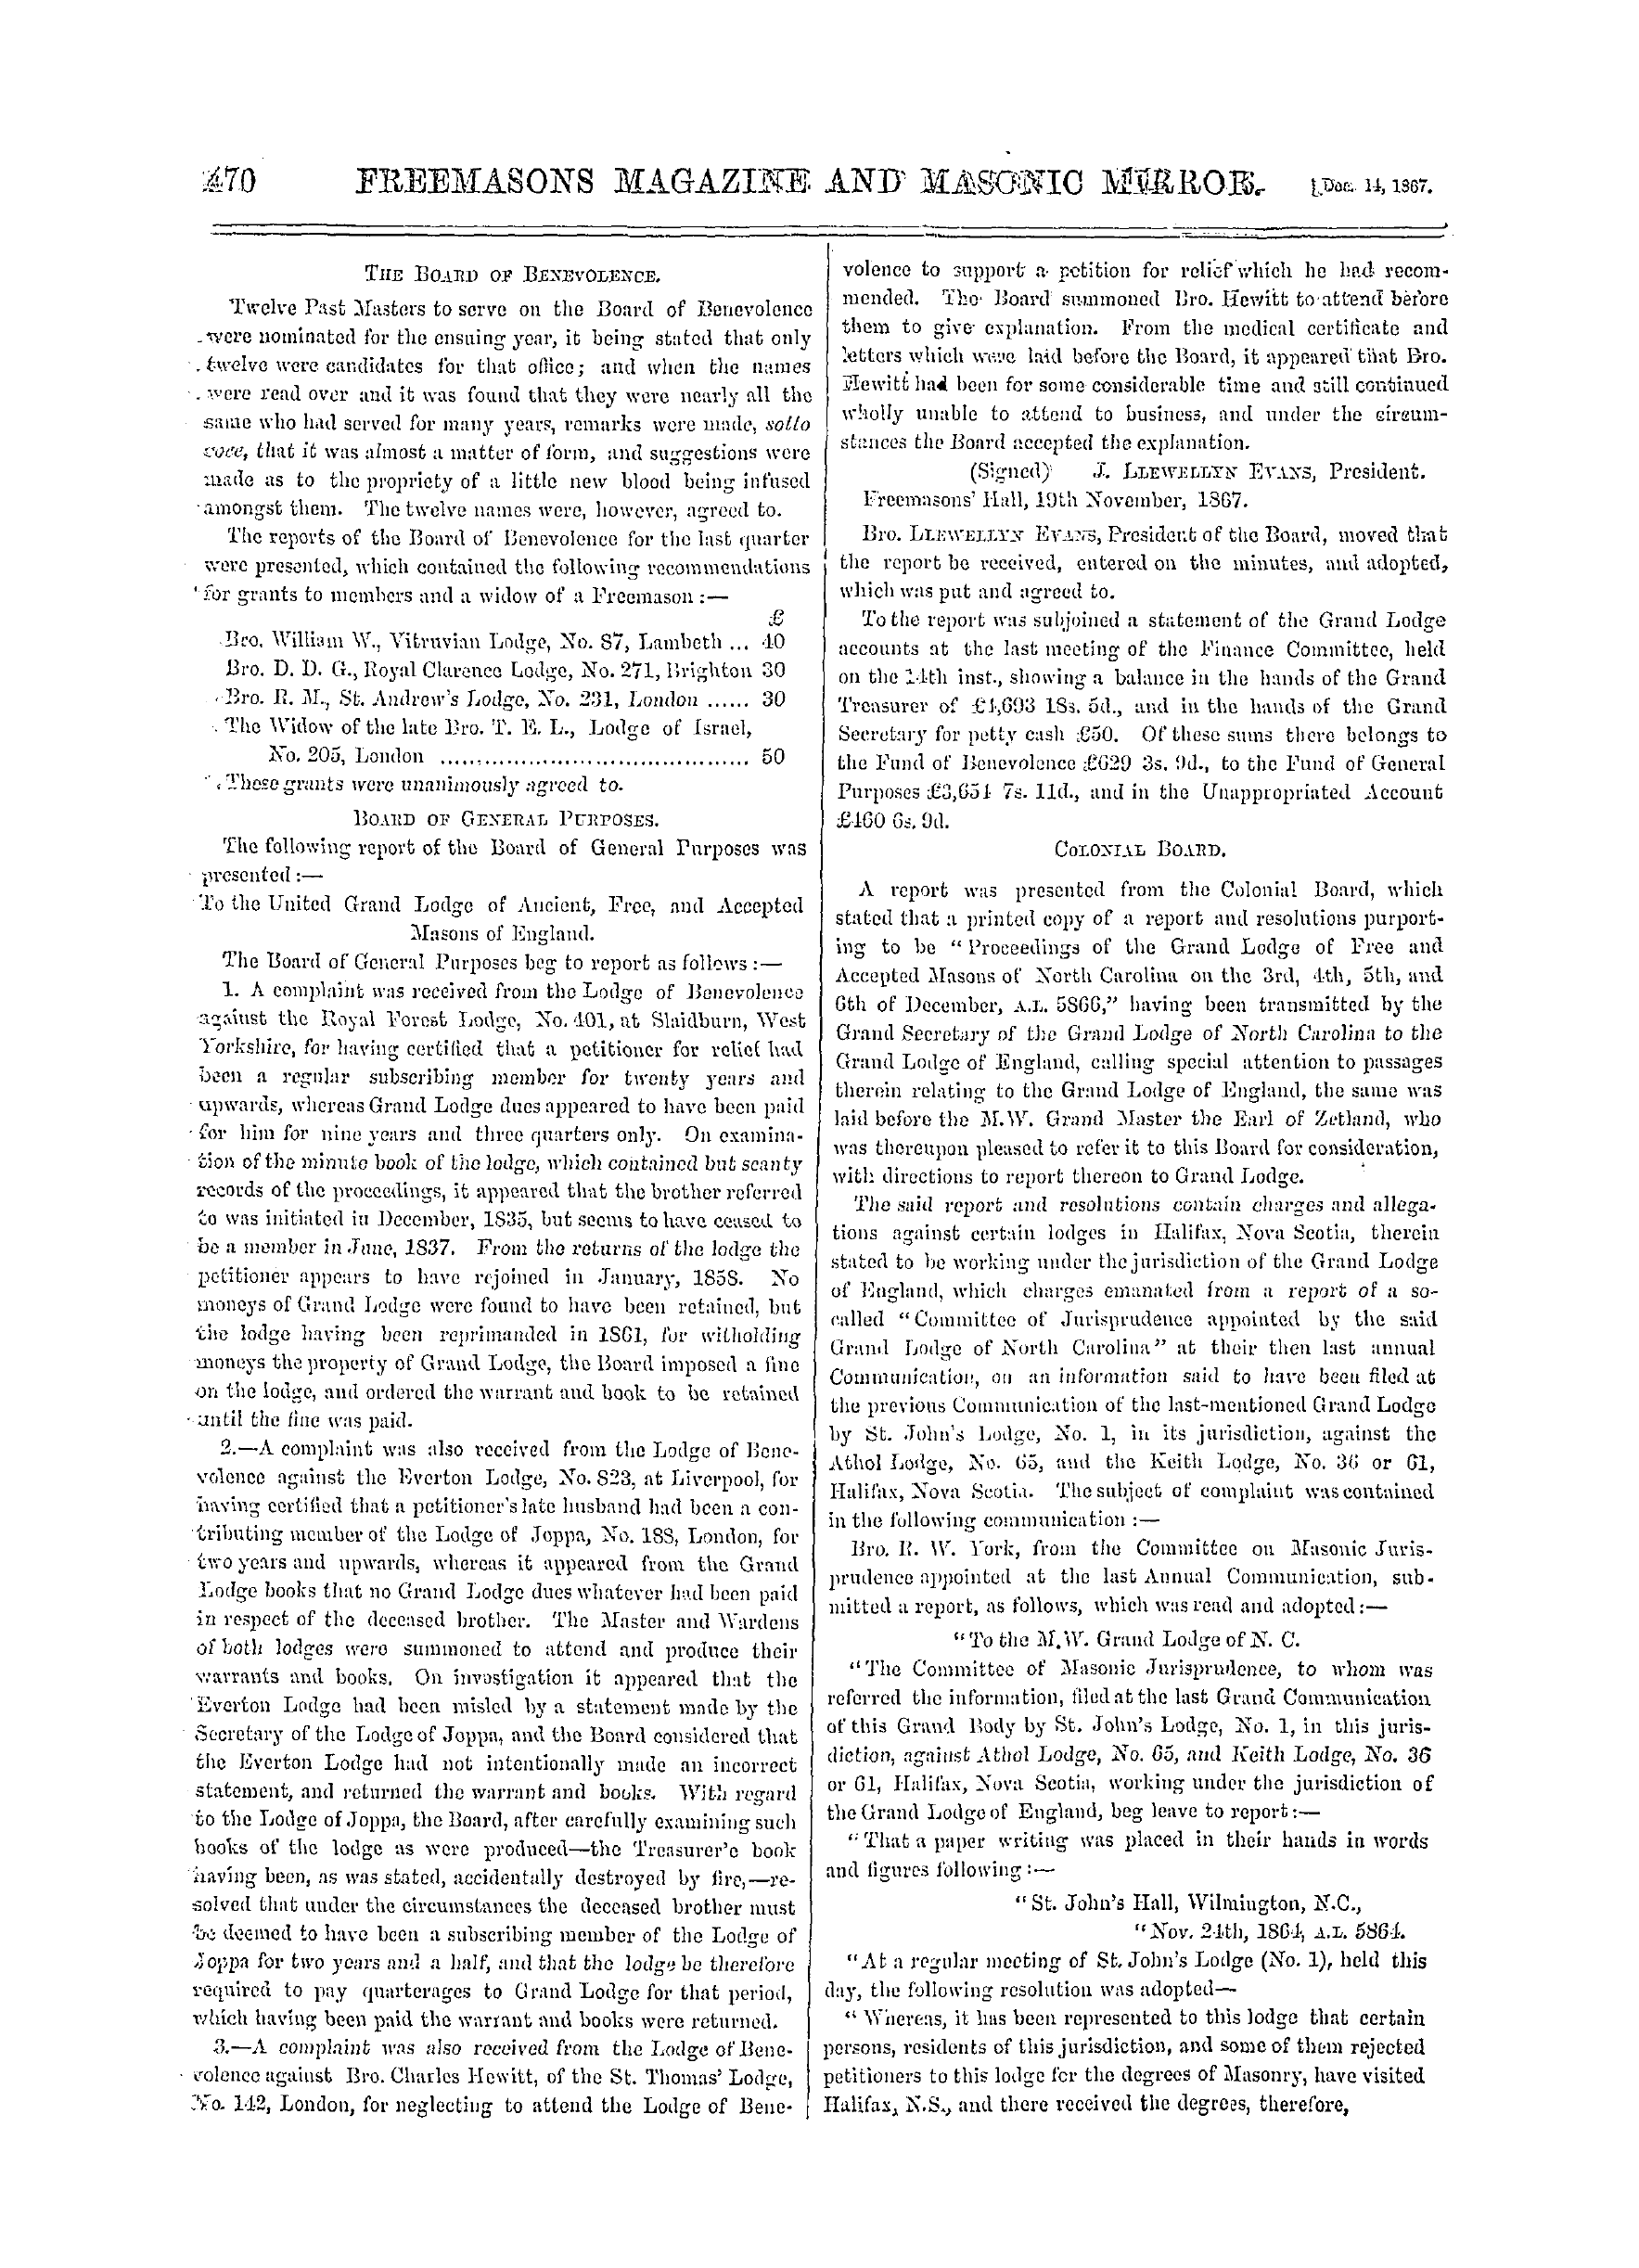 The Freemasons' Monthly Magazine: 1867-12-14: 10